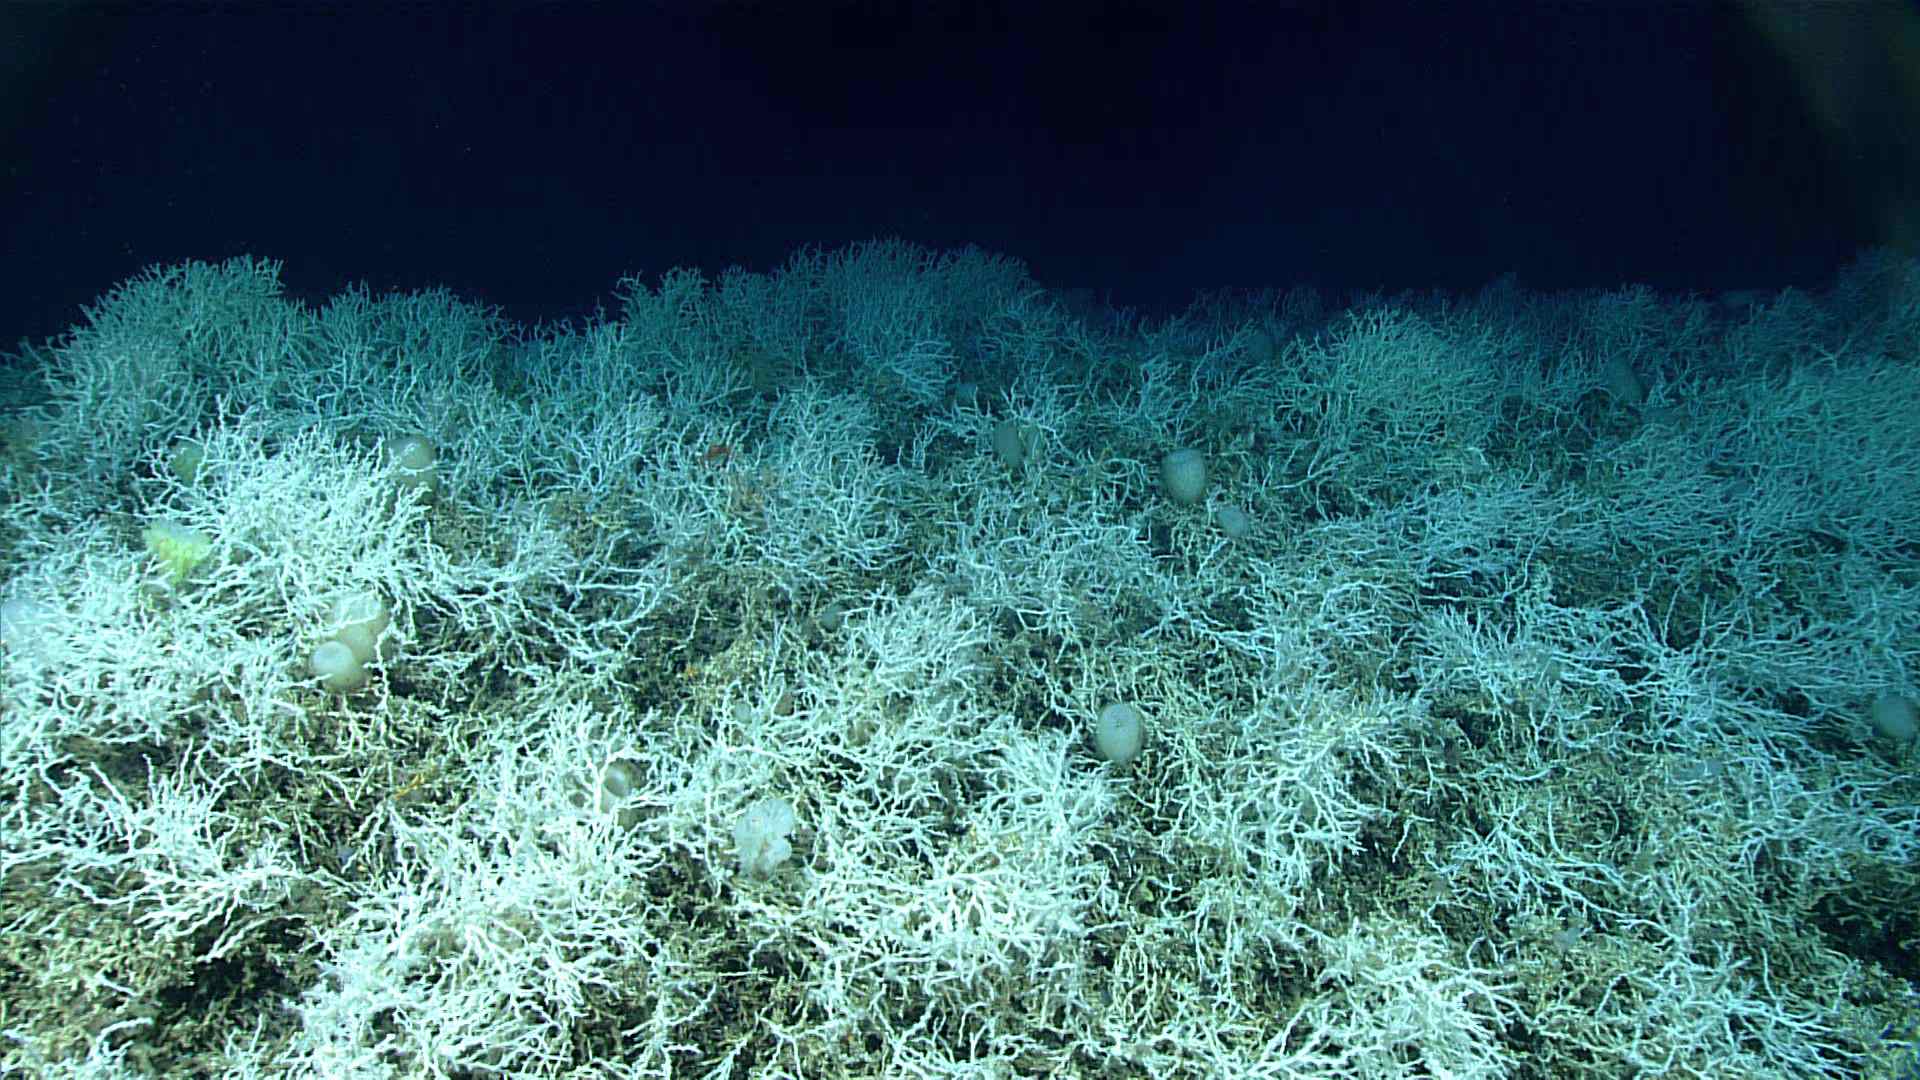 Dziļais koraļļu rifs ir pasaulē lielākais zināmais